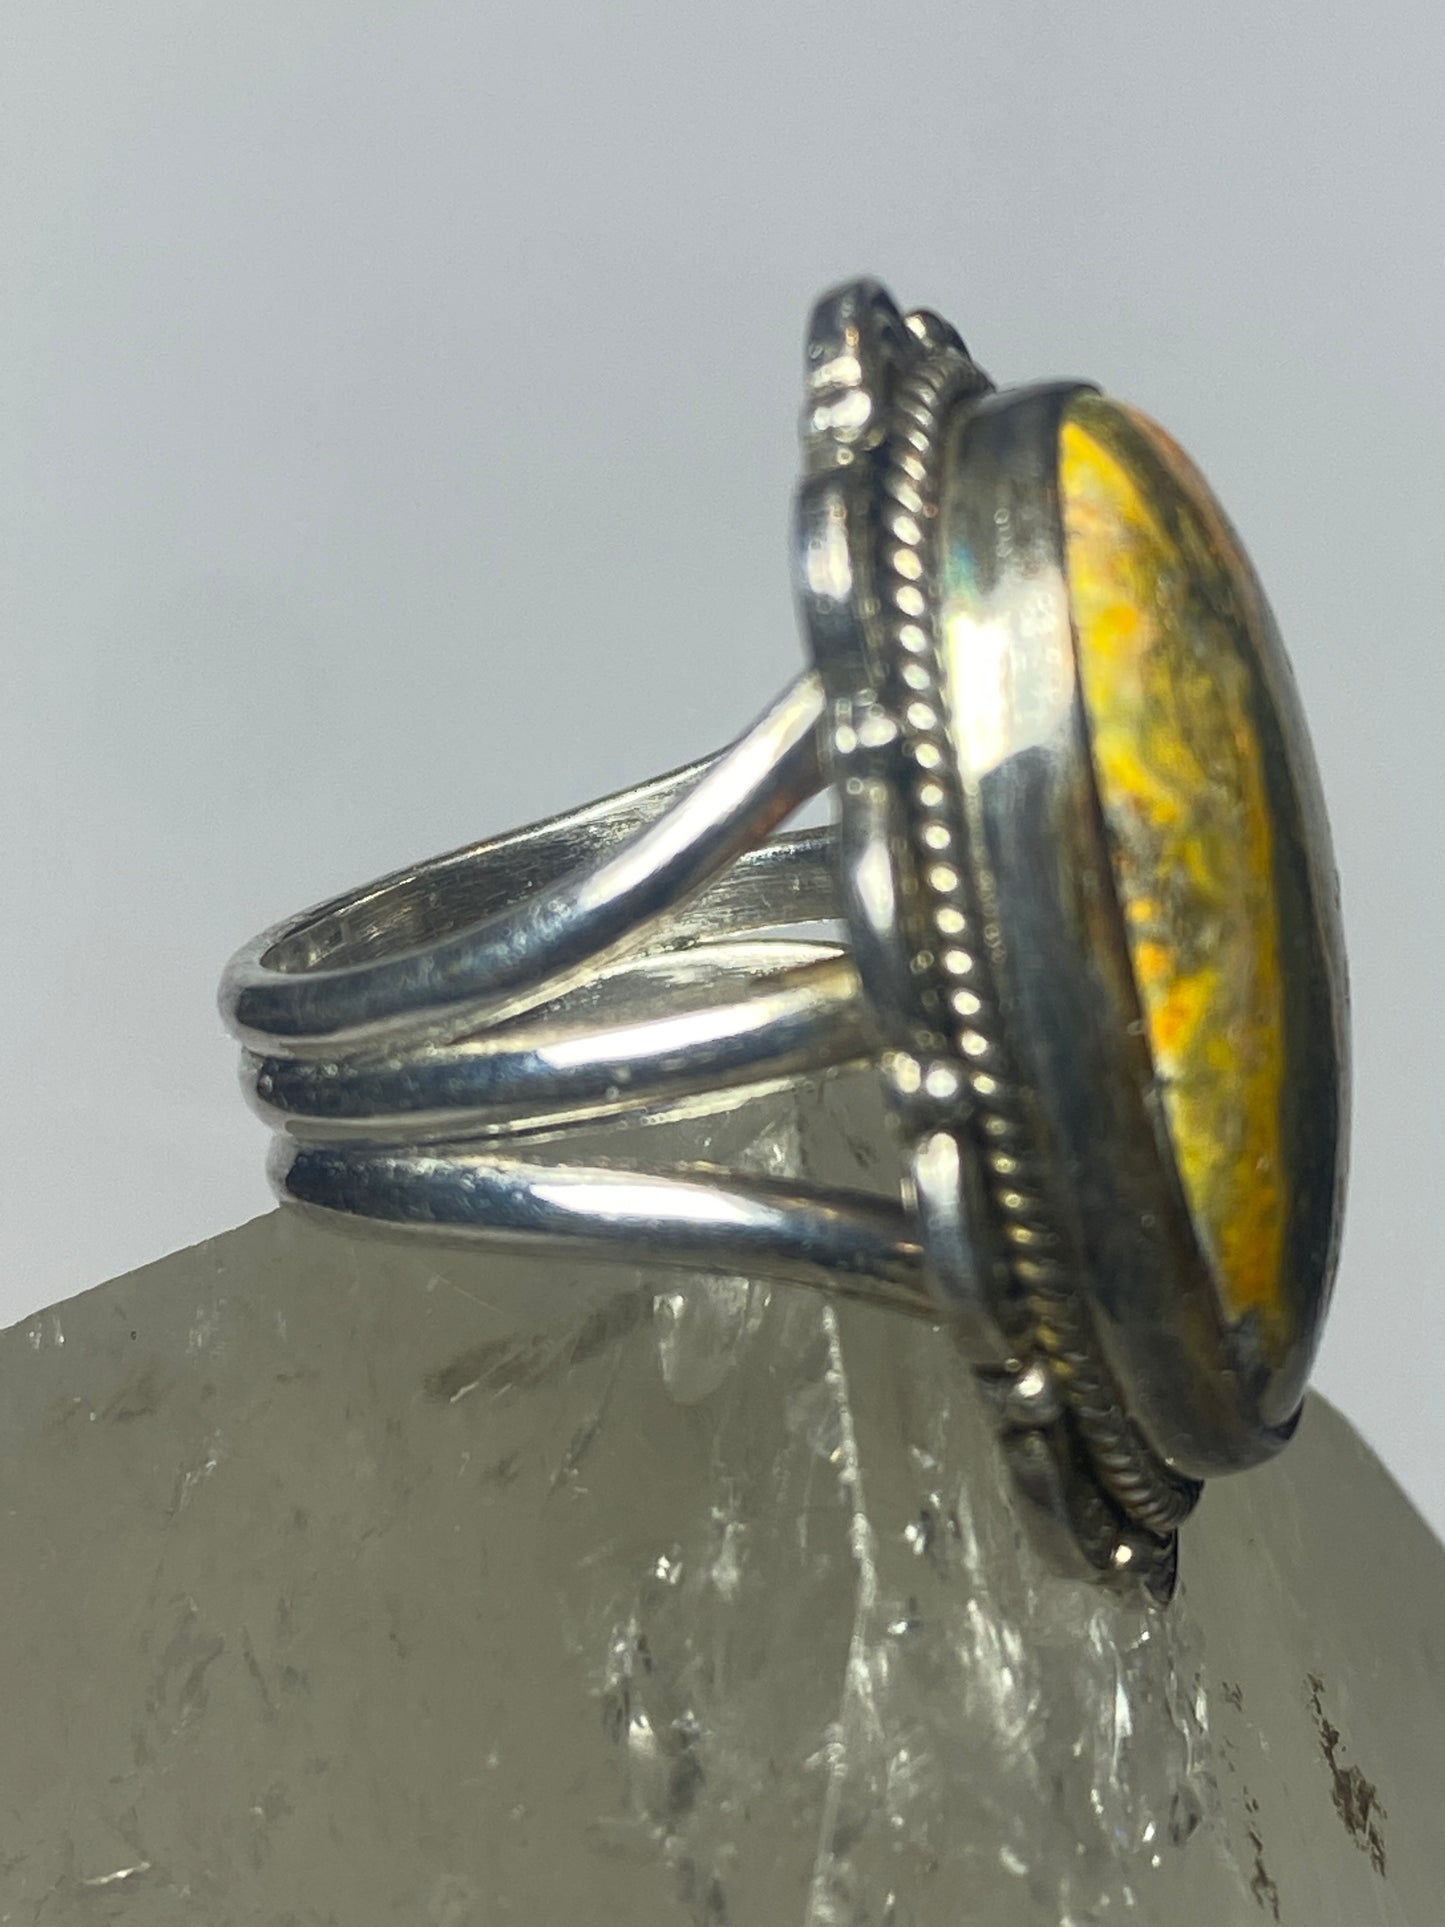 Bumblebee jasper ring size 5.25 sterling silver women girls